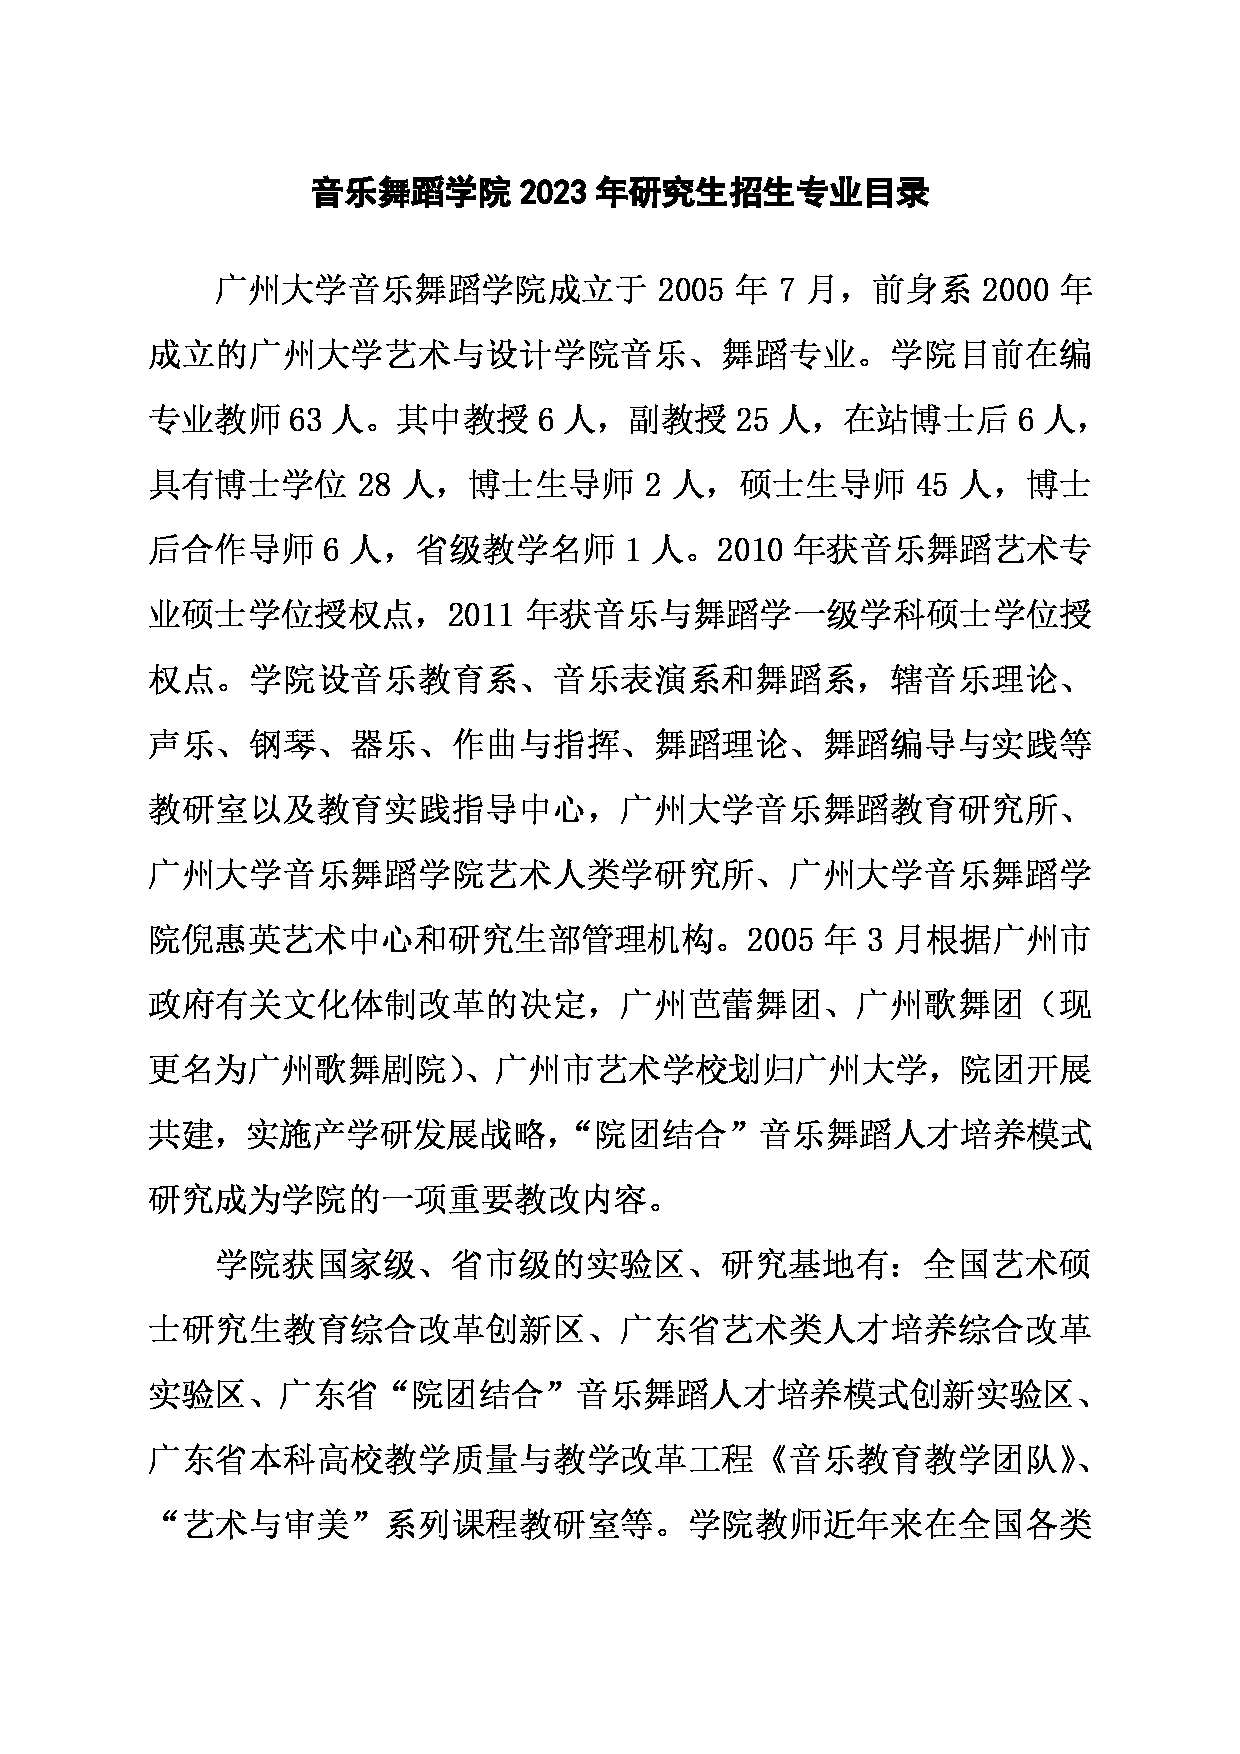 2023招生目录：广州大学2023年  11音乐舞蹈学院 研究生考试招生目录第1页